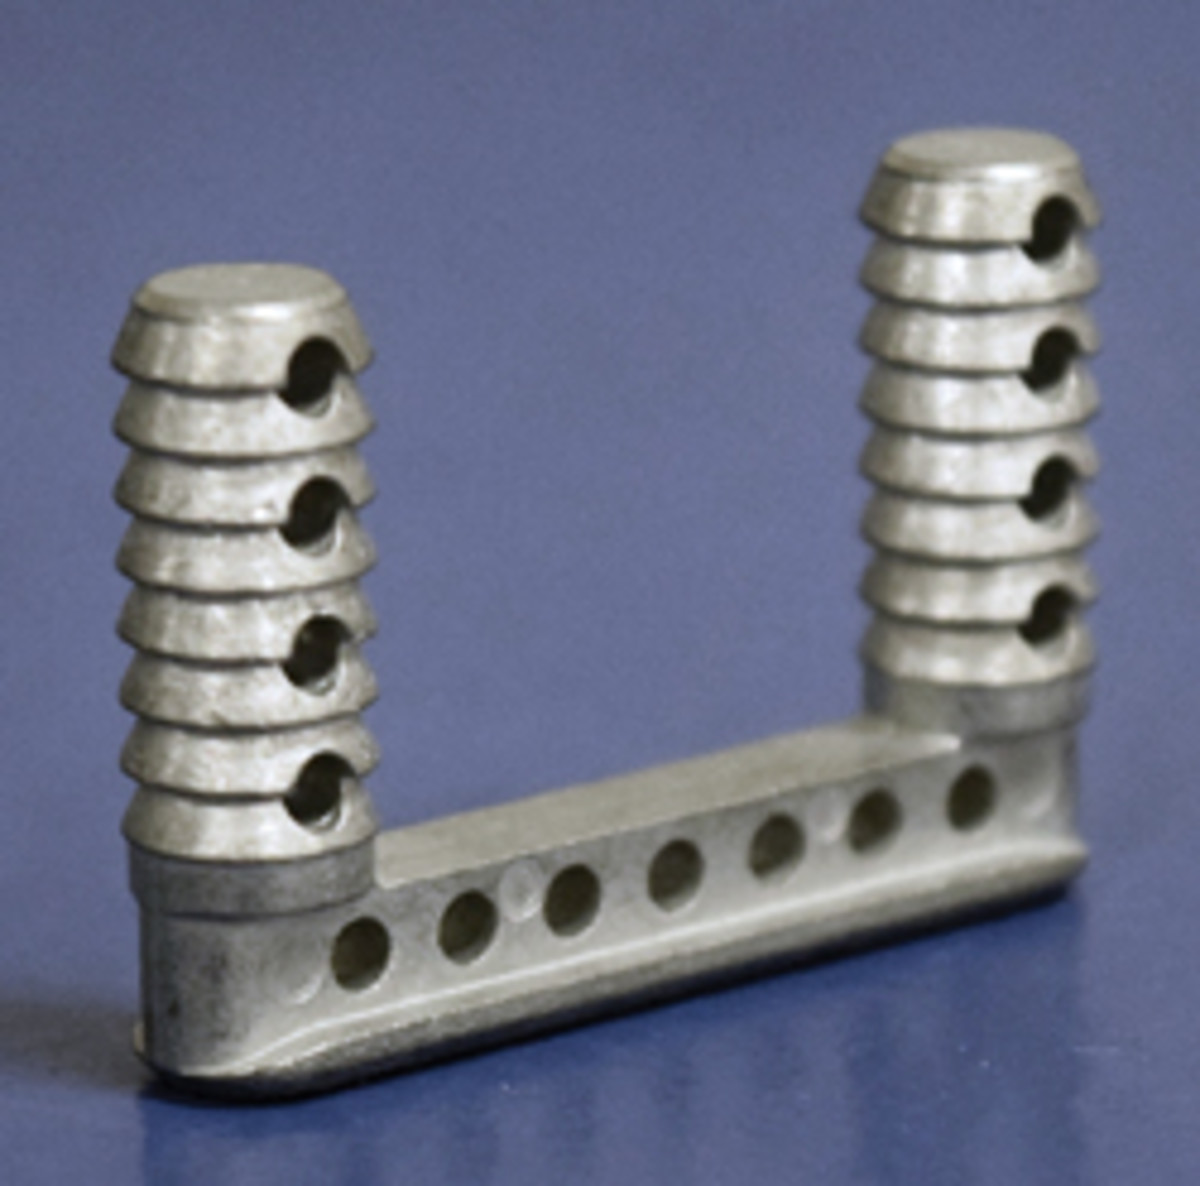 Lockdowel’s metal U-shaped connector.